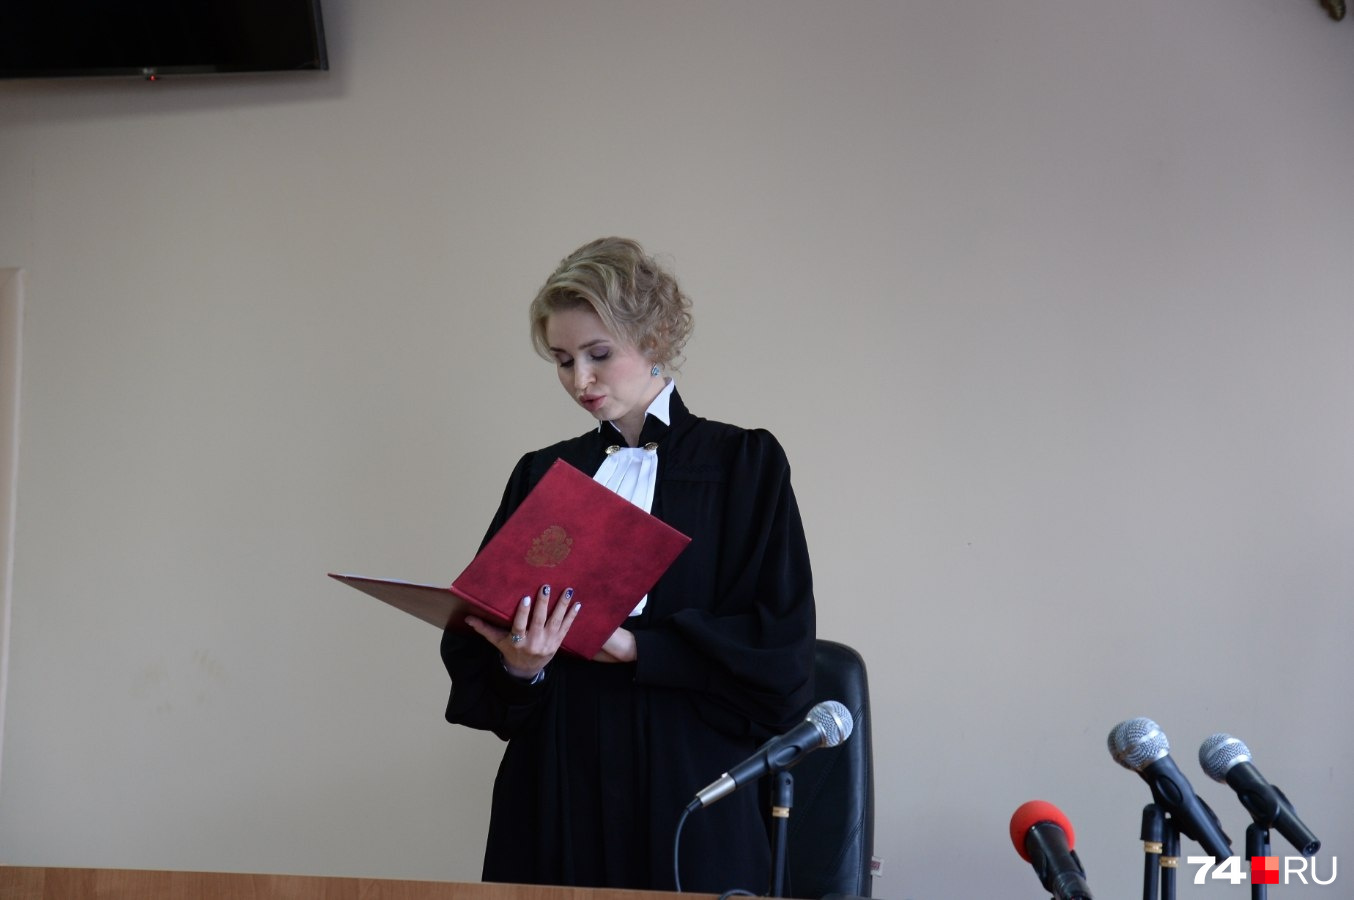 Судья Инна Маркова нашла доводы стороны защиты убедительными и вернула дело прокурору